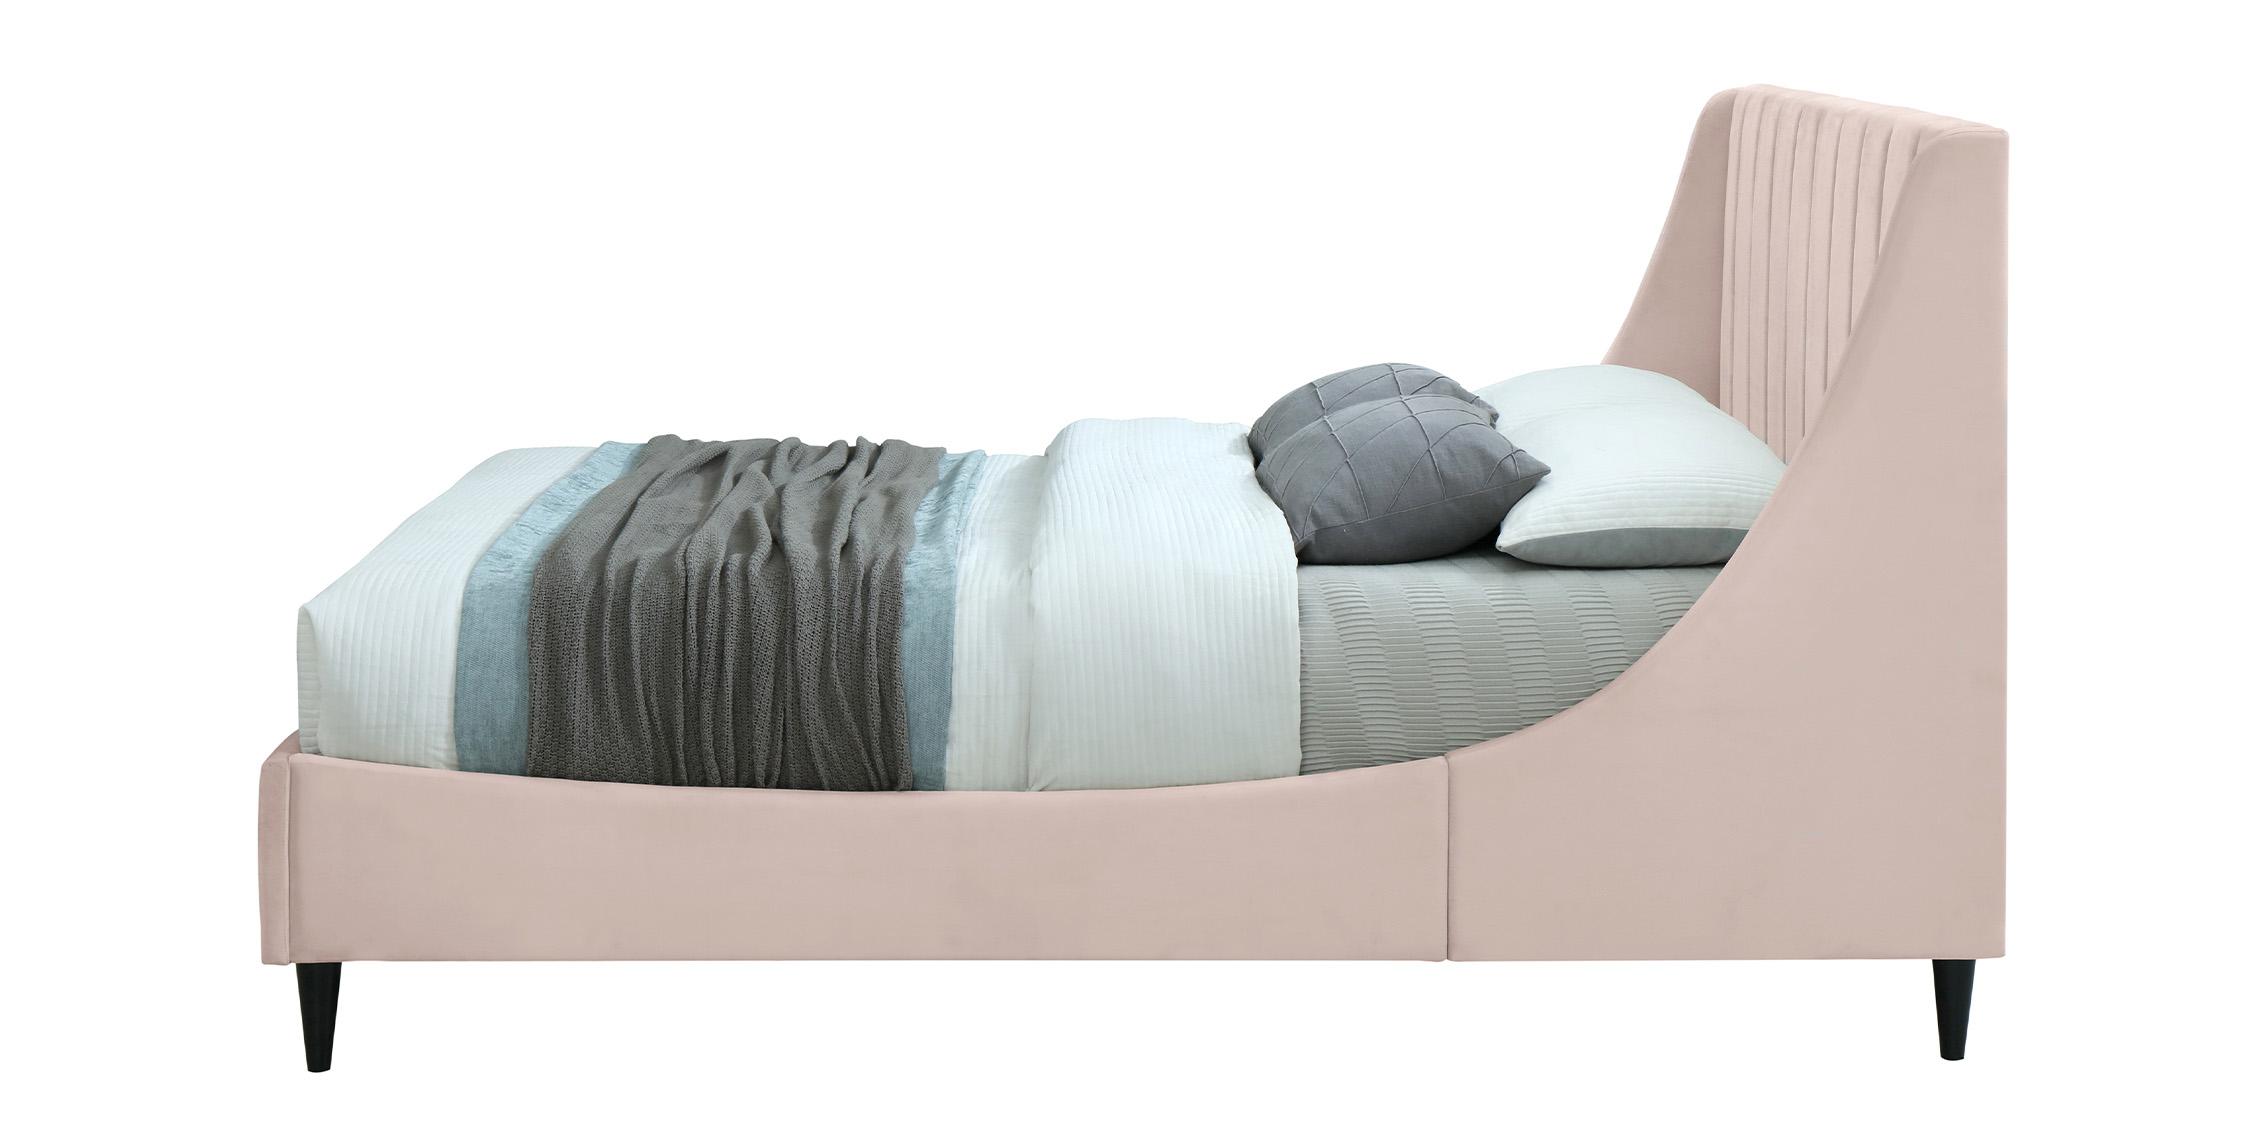 

    
EvaPink-K Meridian Furniture Platform Bed
